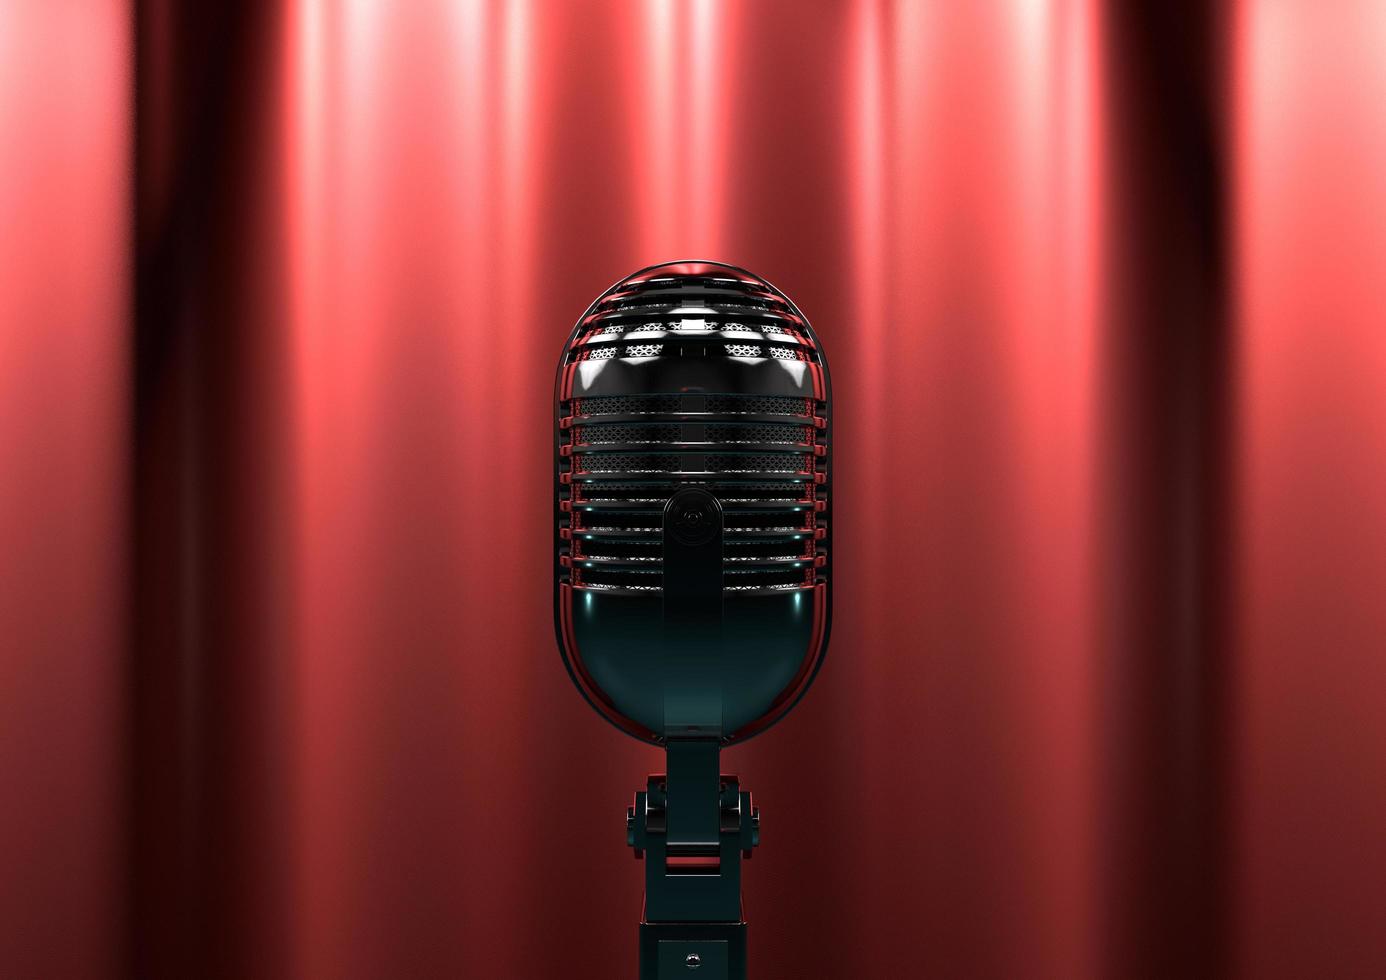 micrófono antiguo en el escenario con cortinas rojas. la iluminación escénica cambiante crea drama y suspenso. foto